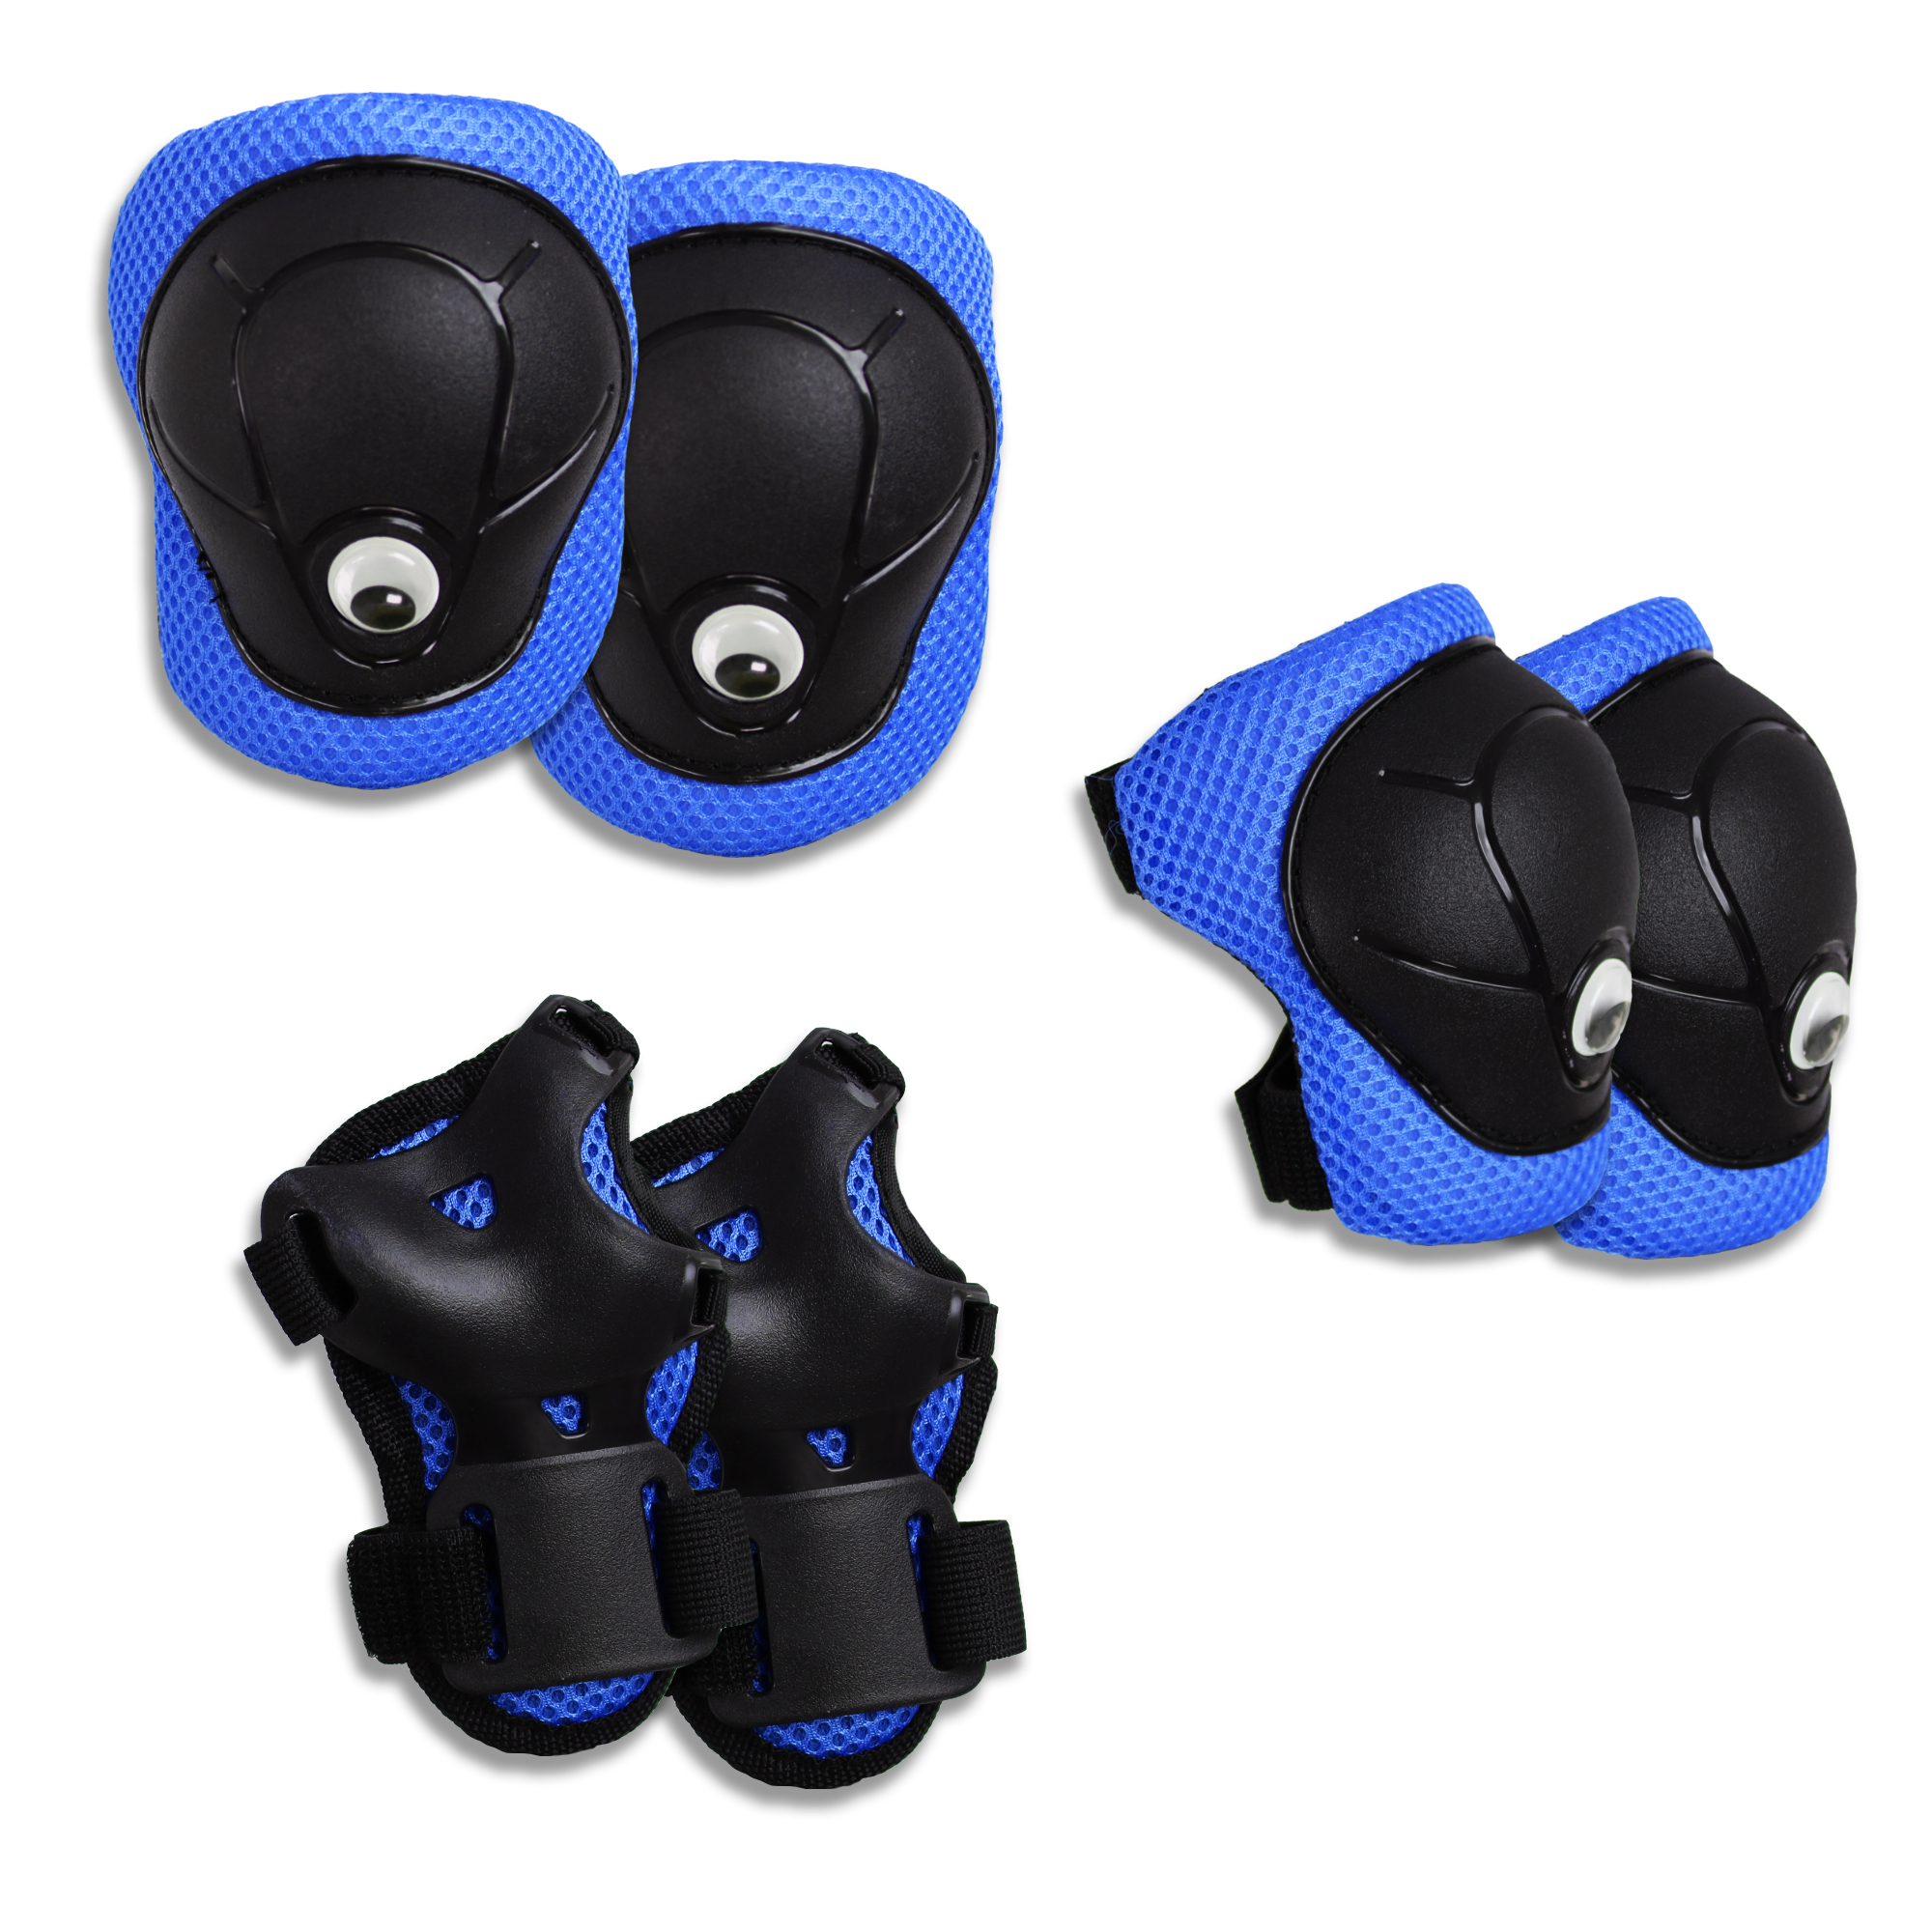 Billede af Crazy Safety blå beskyttelsesudstyr til albuer, knæ og håndled. Testet og godkendt til børn